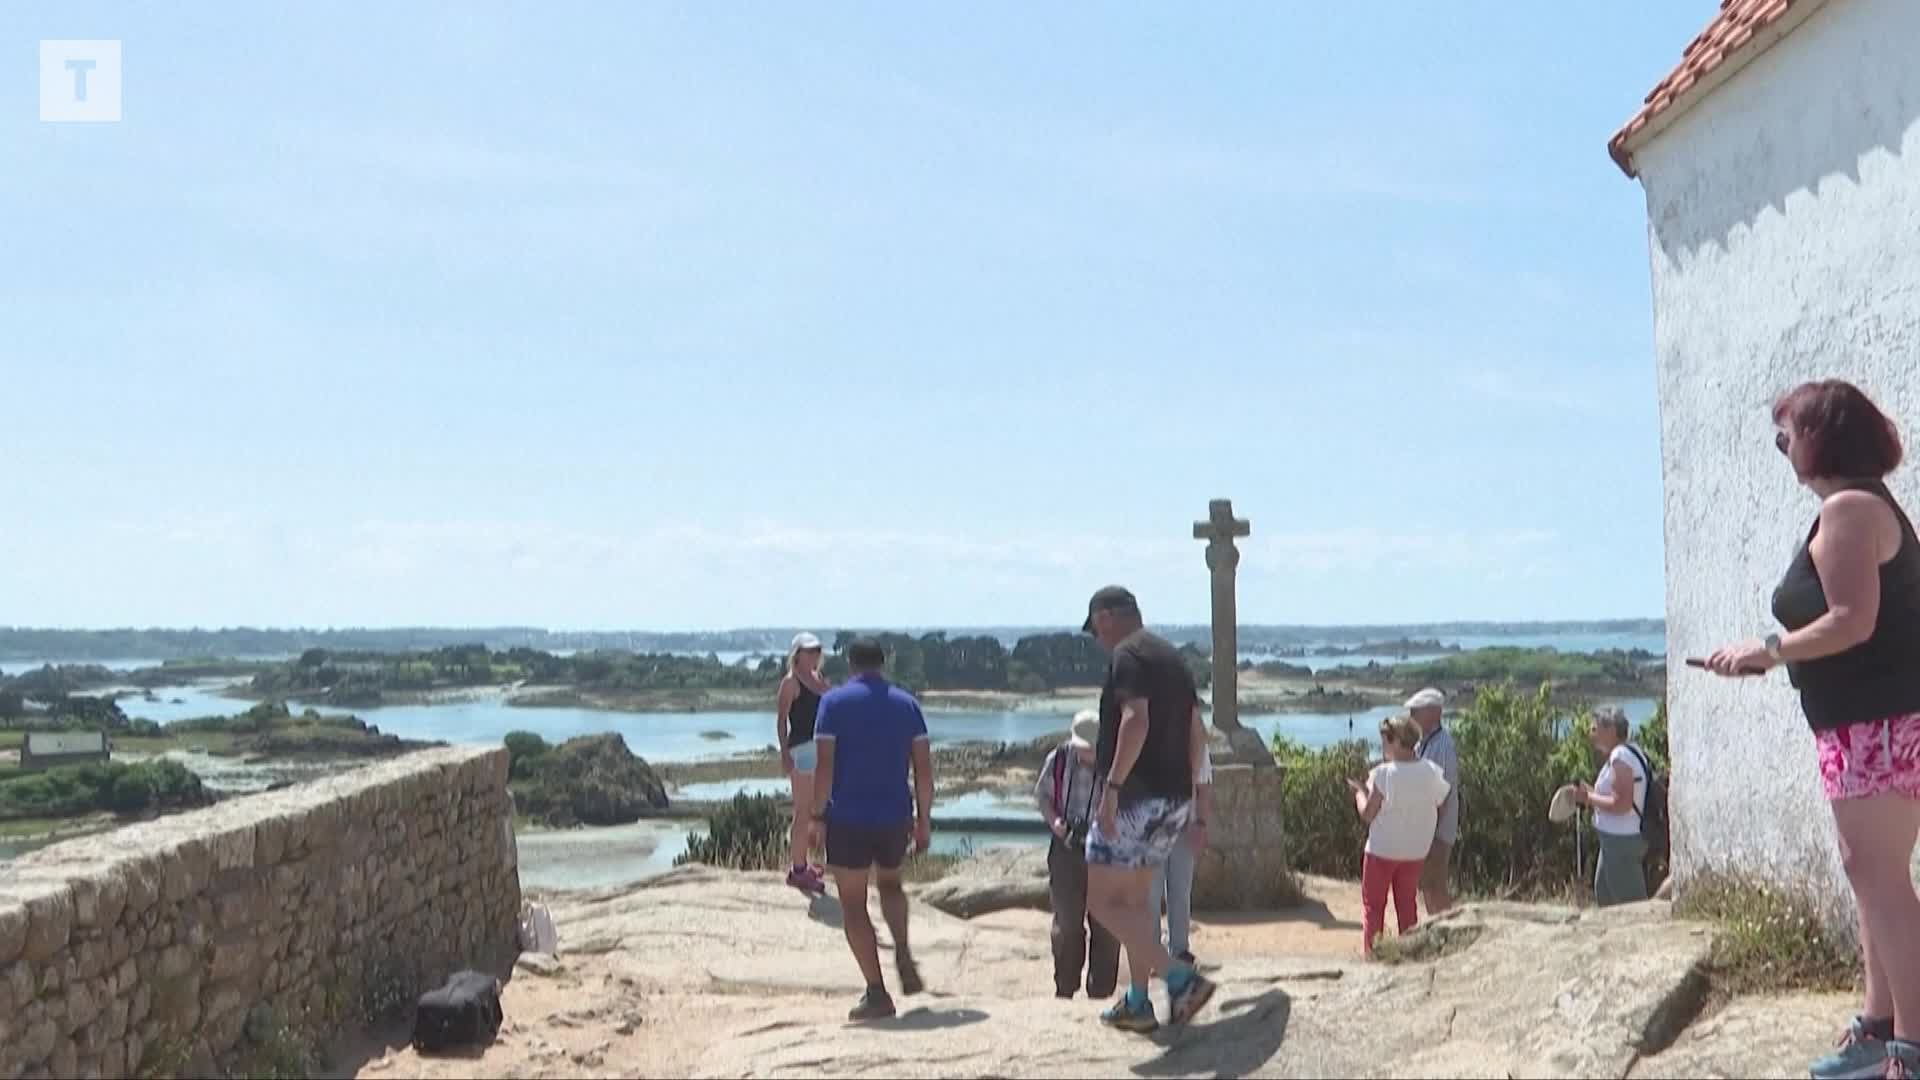 Surtourisme : sur l'île de Bréhat, que pensent les commerçants de la jauge de fréquentation cet été ? [Vidéo]